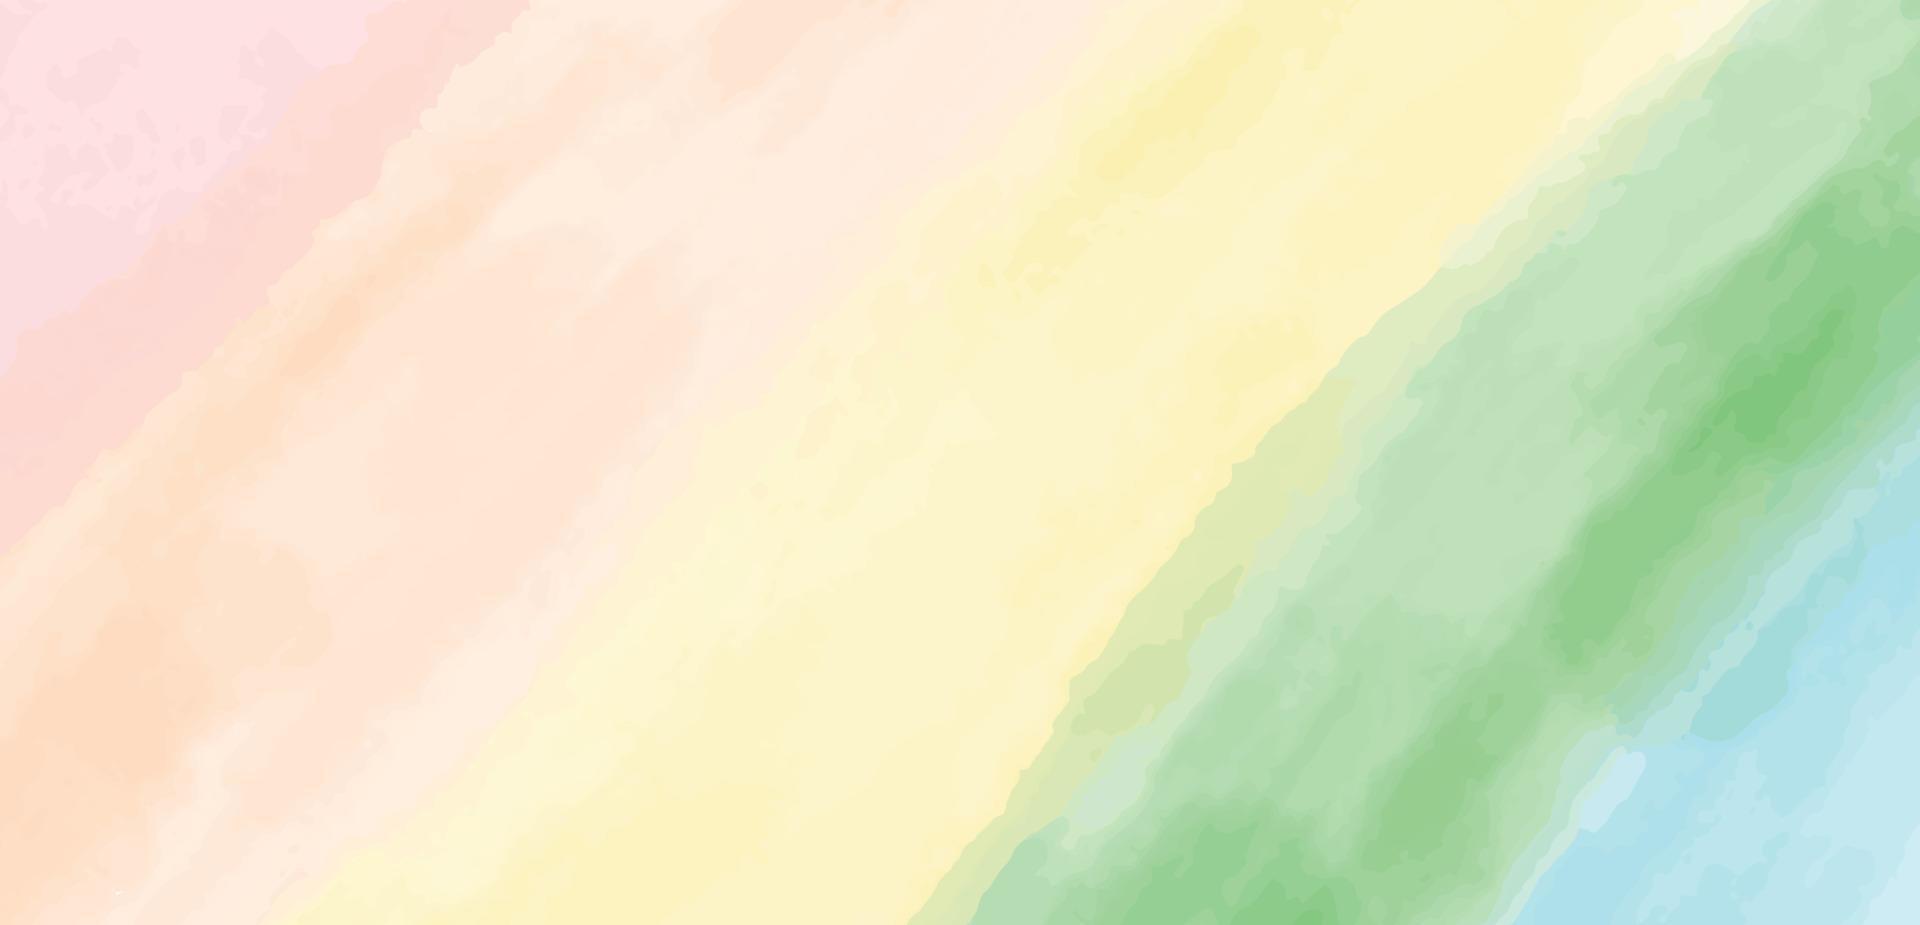 vermelho amarelo laranja verde azul roxa tolet cor pastel gradiente abstrato papel de parede fundo decoração espectro lgbt orgulho gay lésbica brilhante arco Iris liberdade homossexual aguarela desenhando escova vetor